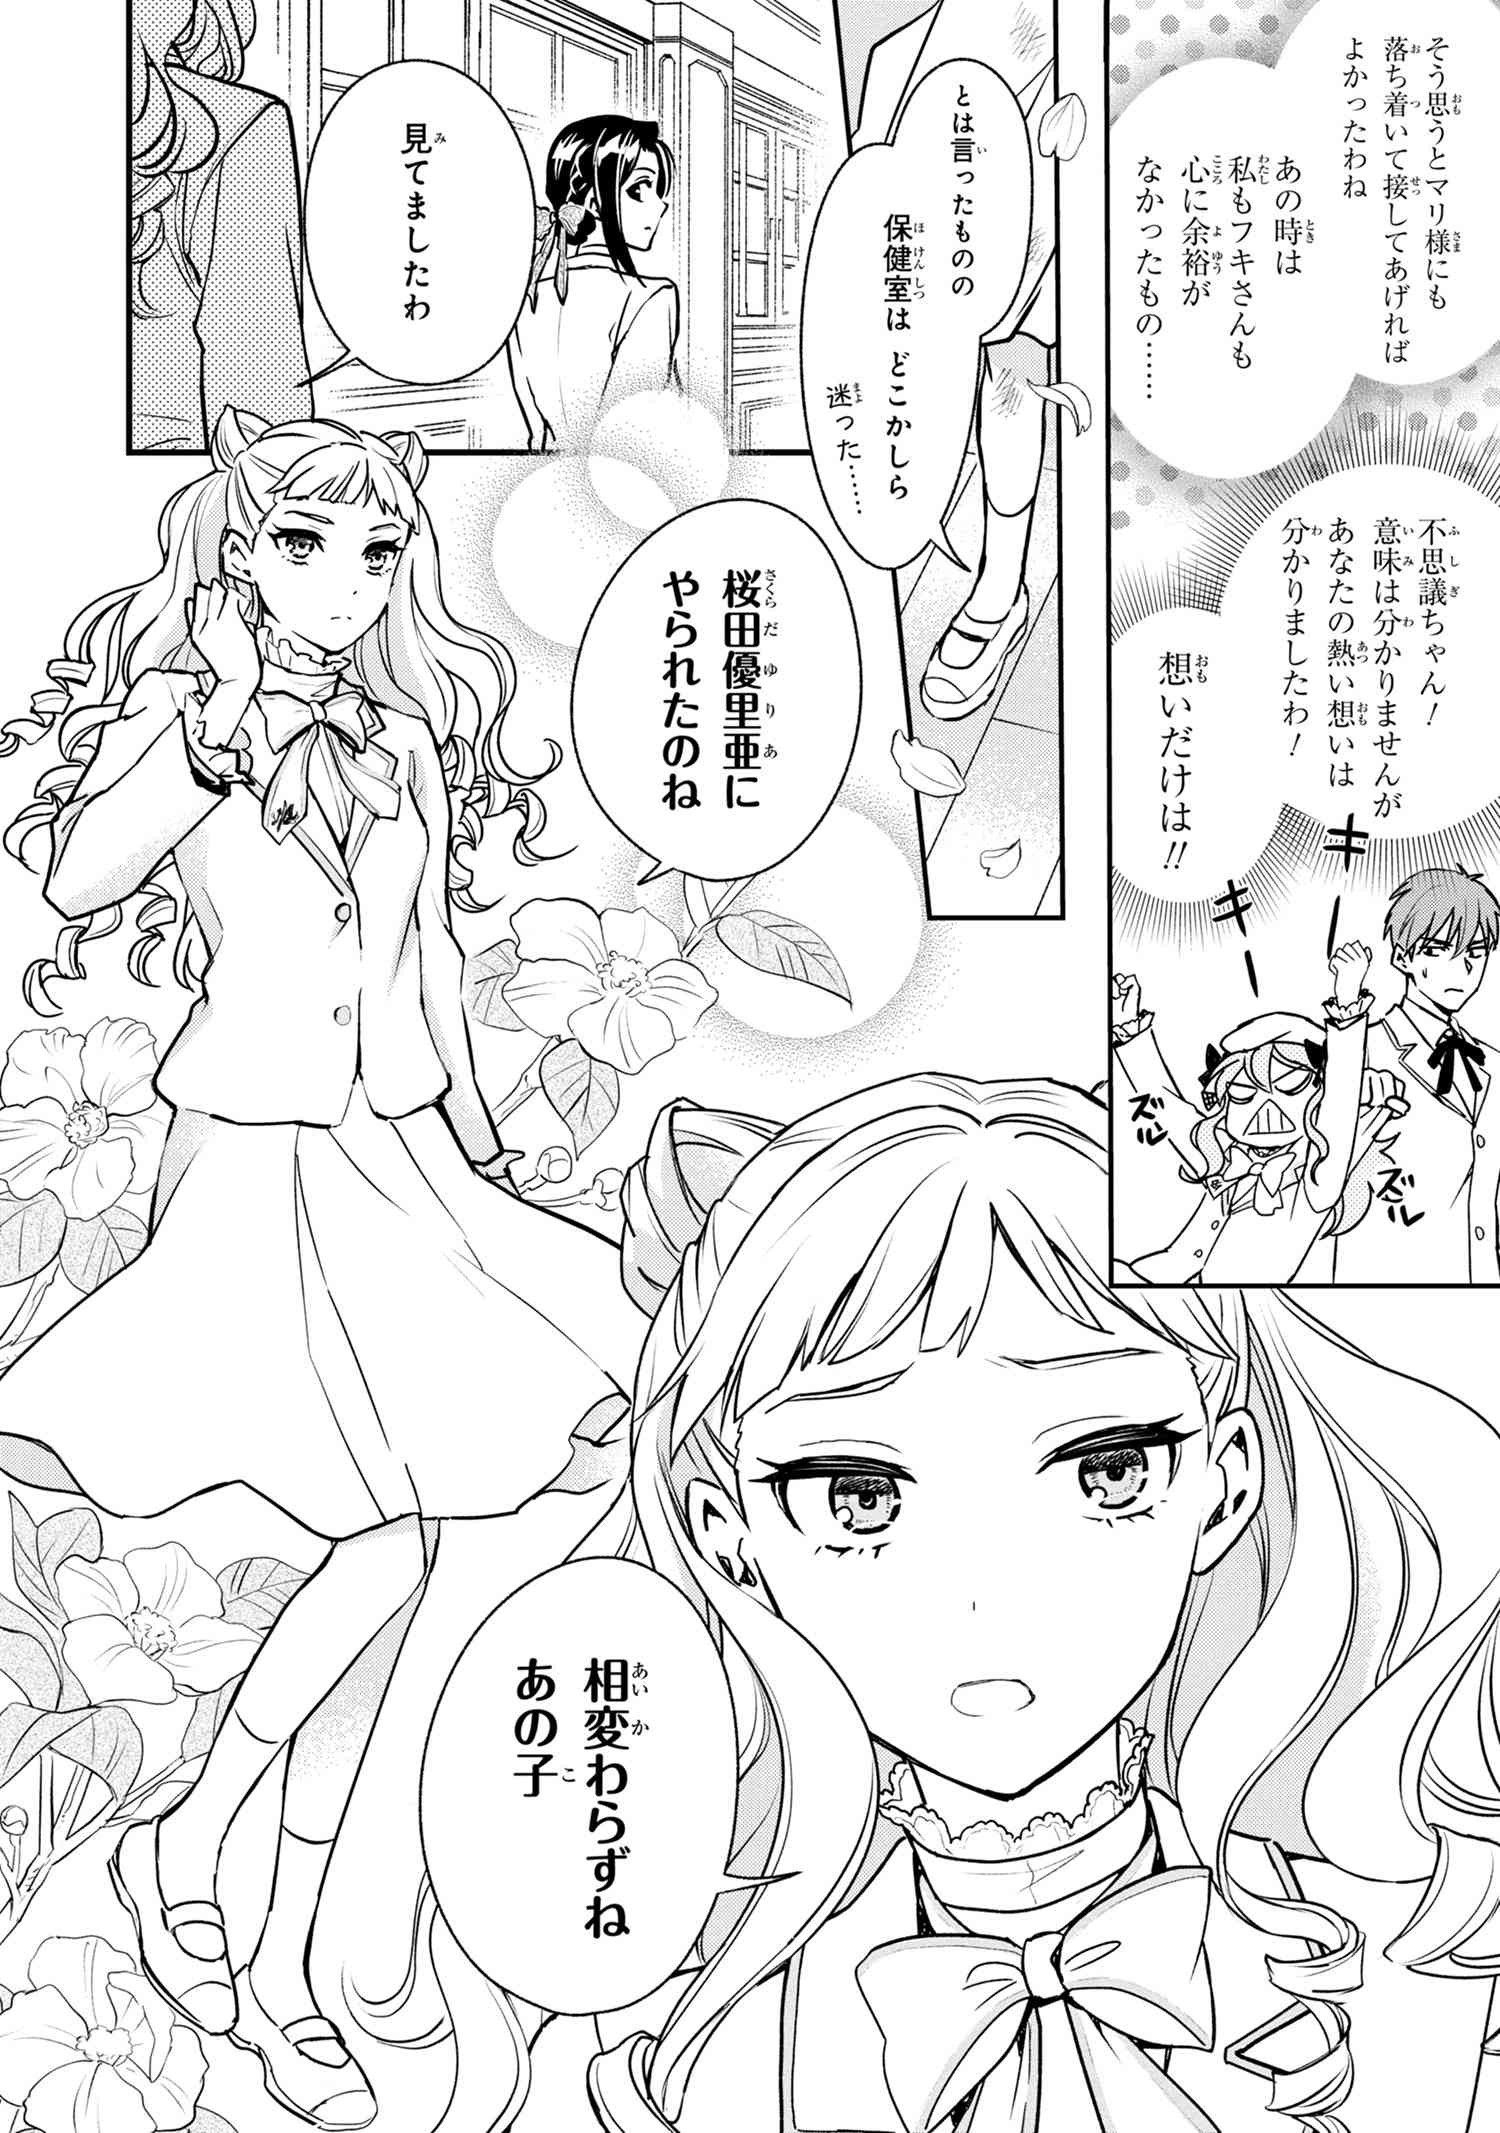 Reiko no Fuugi Akuyaku Reijou to Yobarete imasu ga, tada no Binbou Musume desu - Chapter 1-1 - Page 17